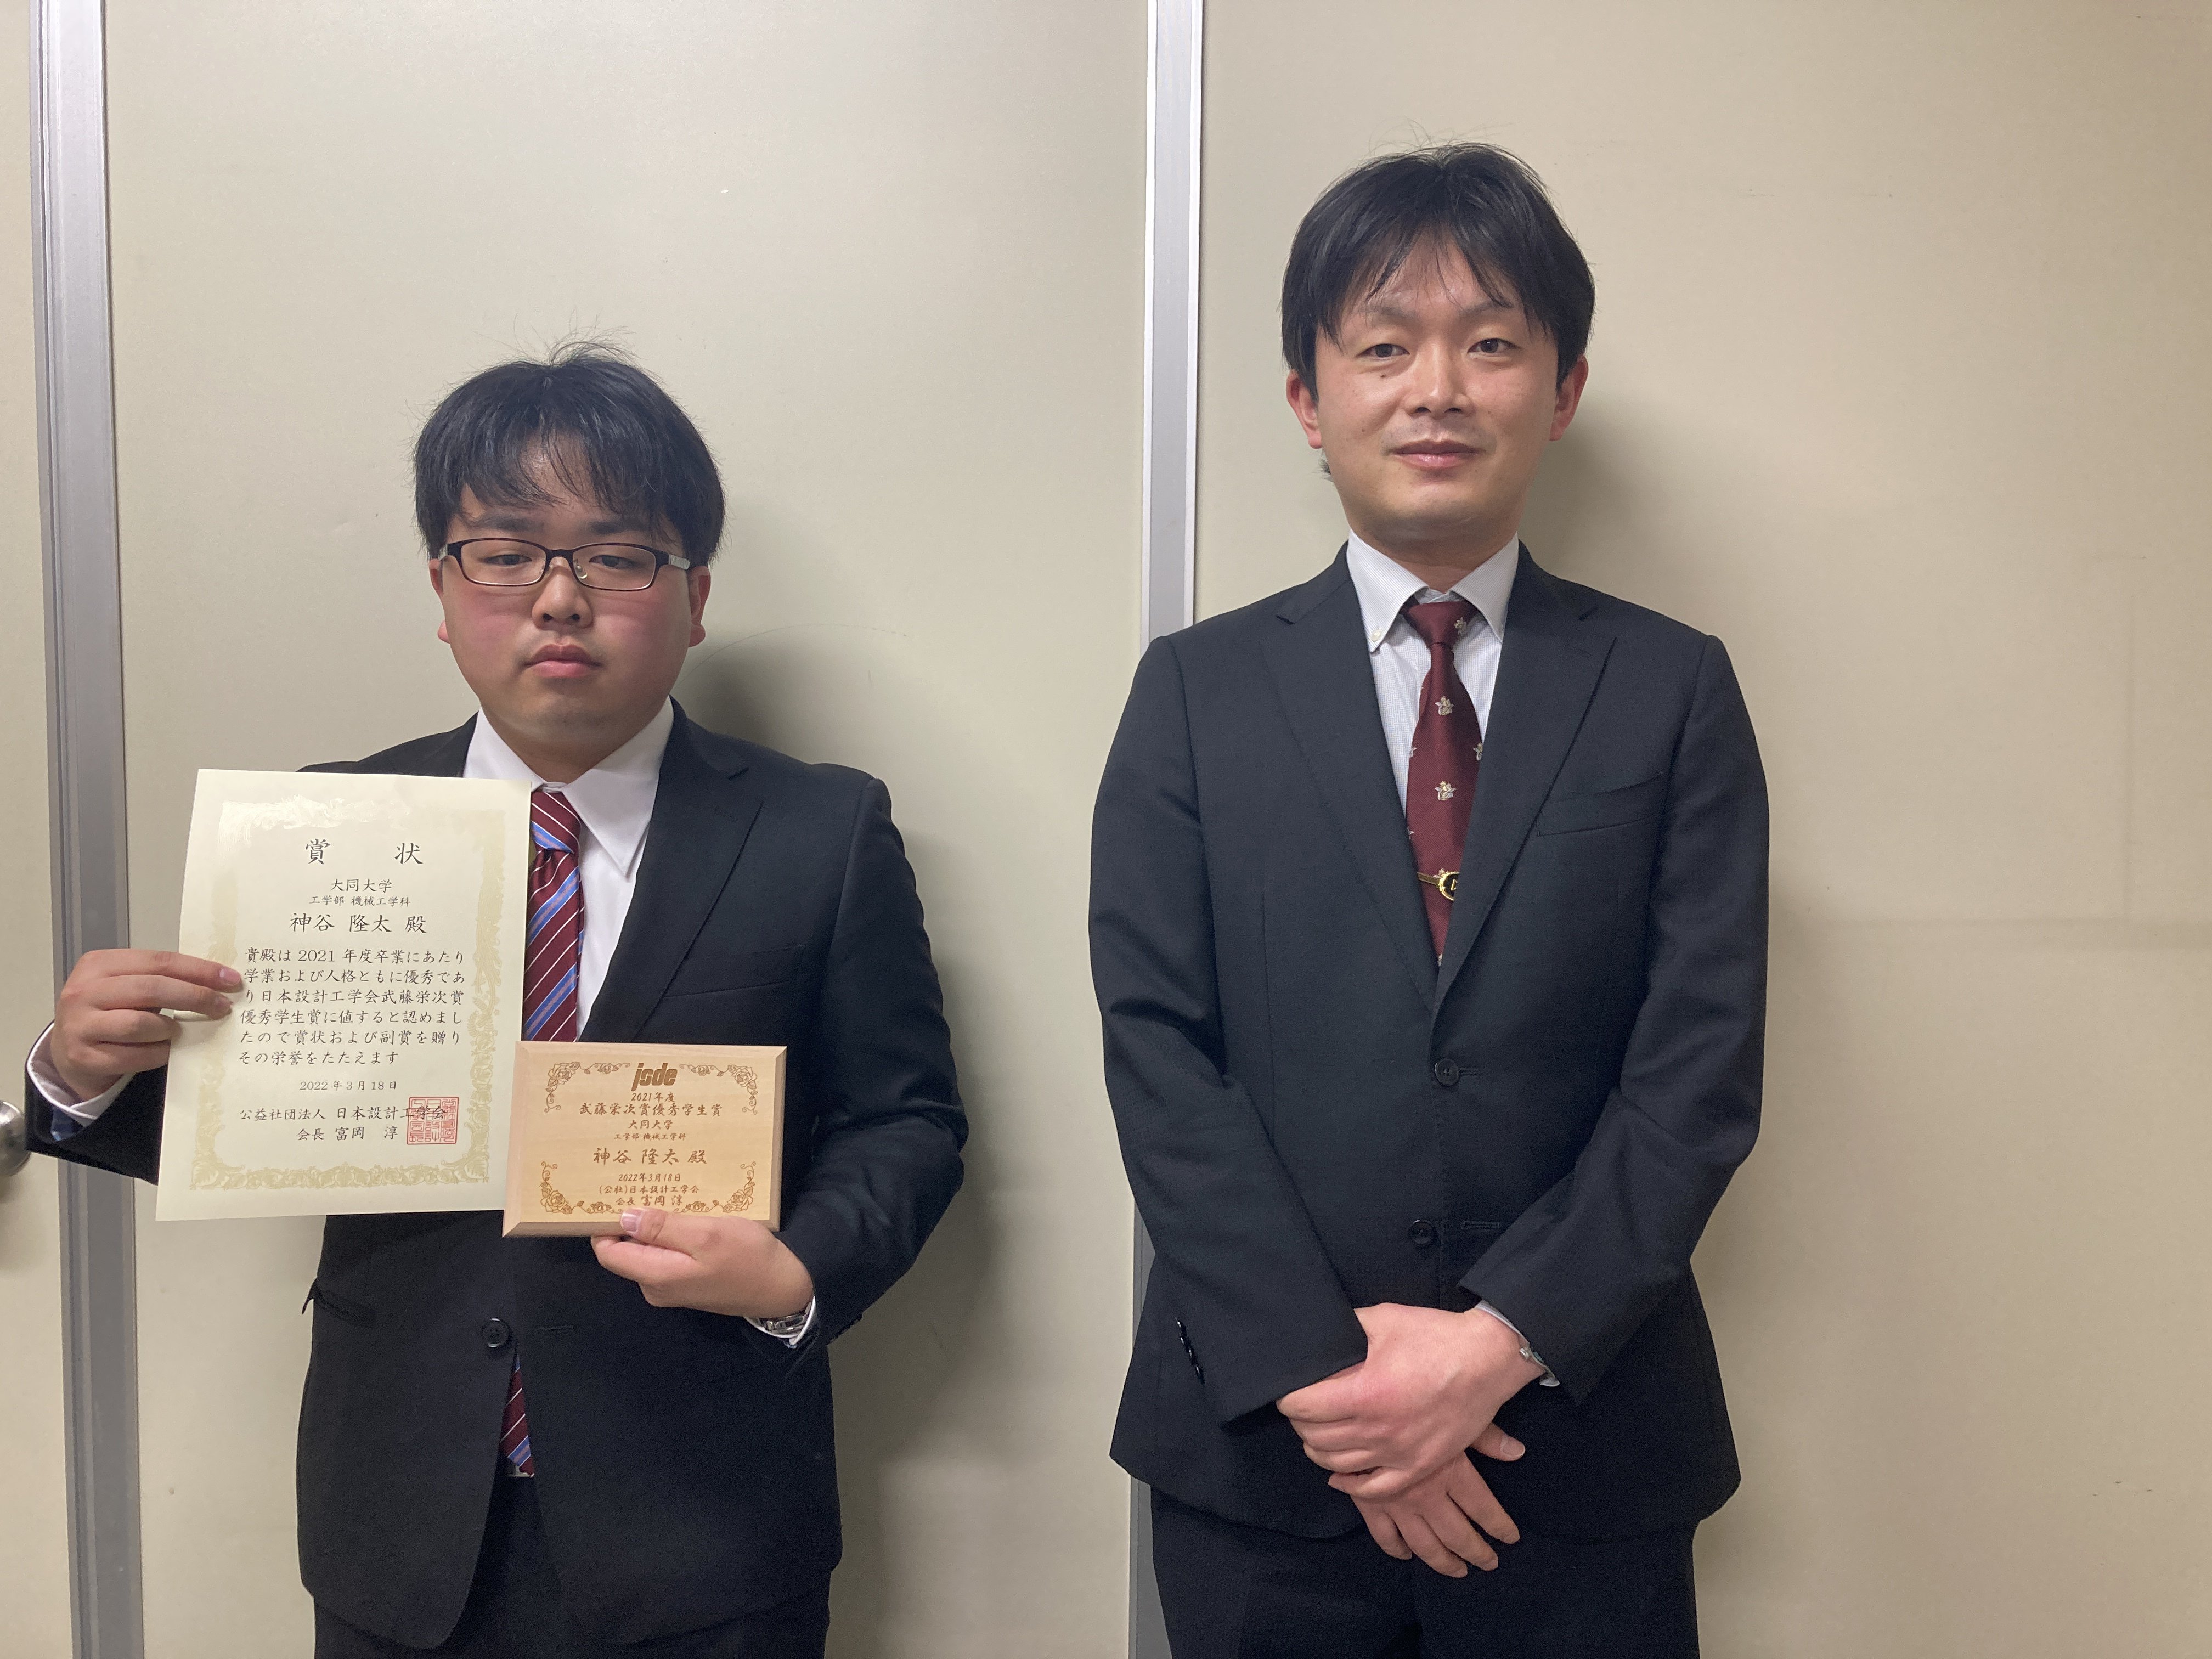 左から受賞した神谷隆太さんと指導教員の萩野将広講師